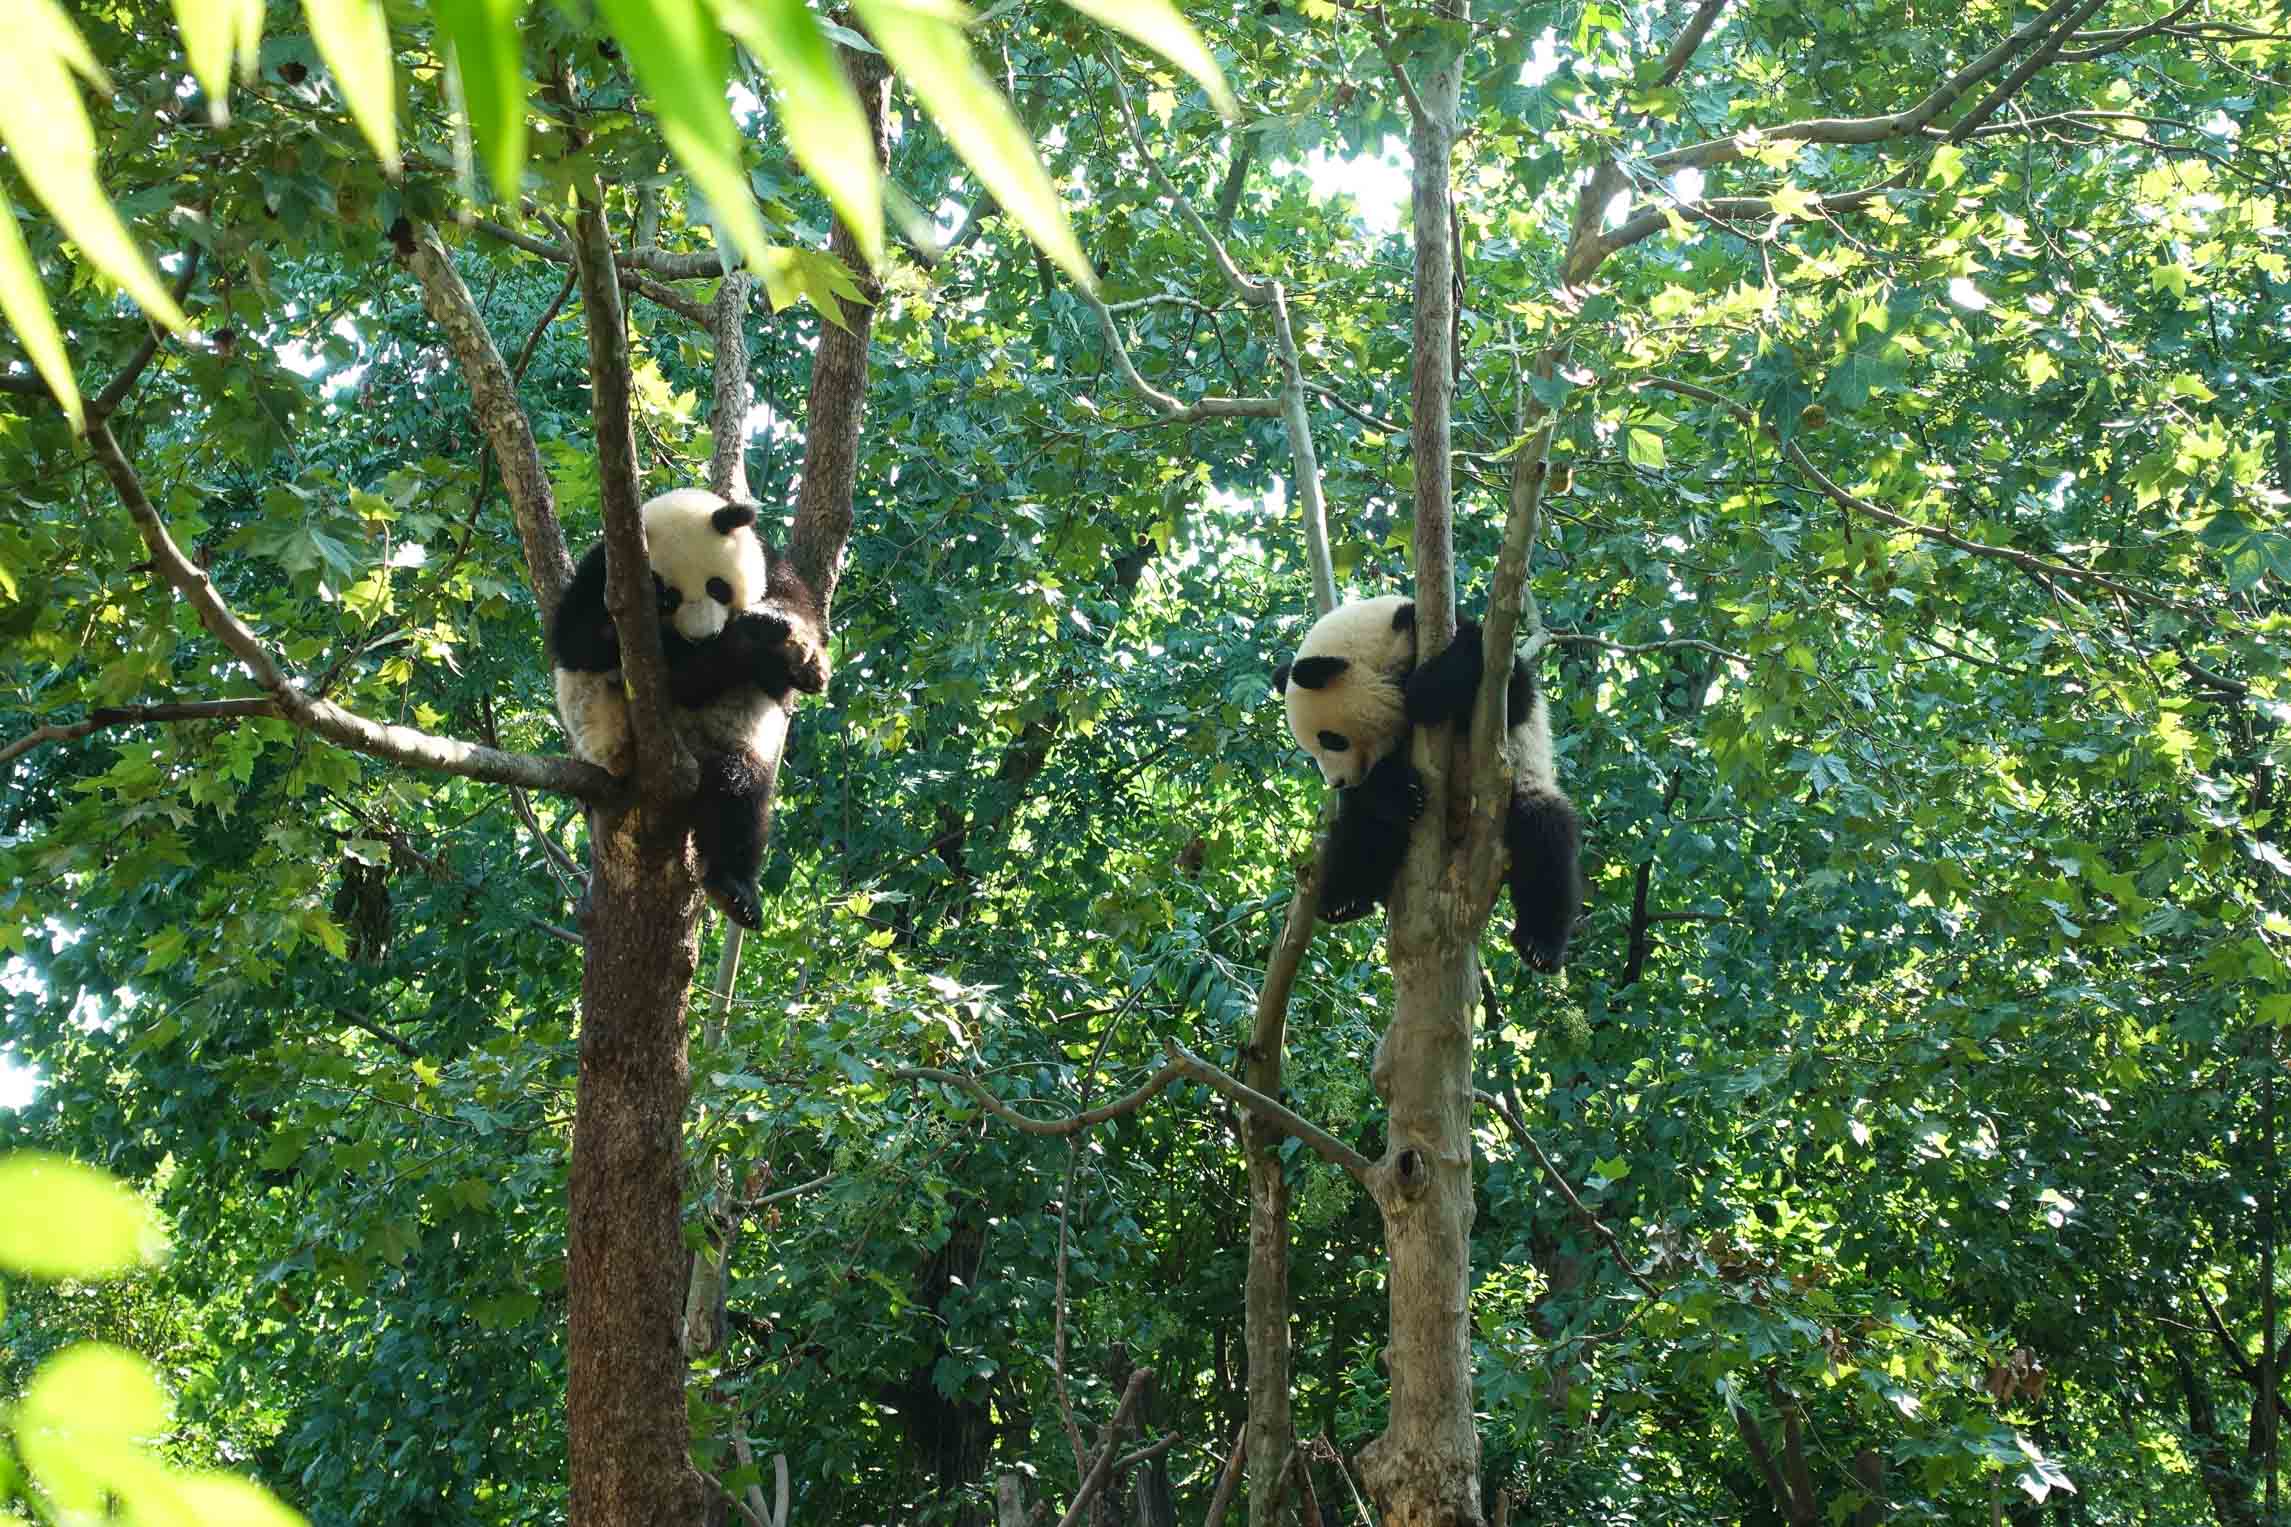 Pandas hanging out